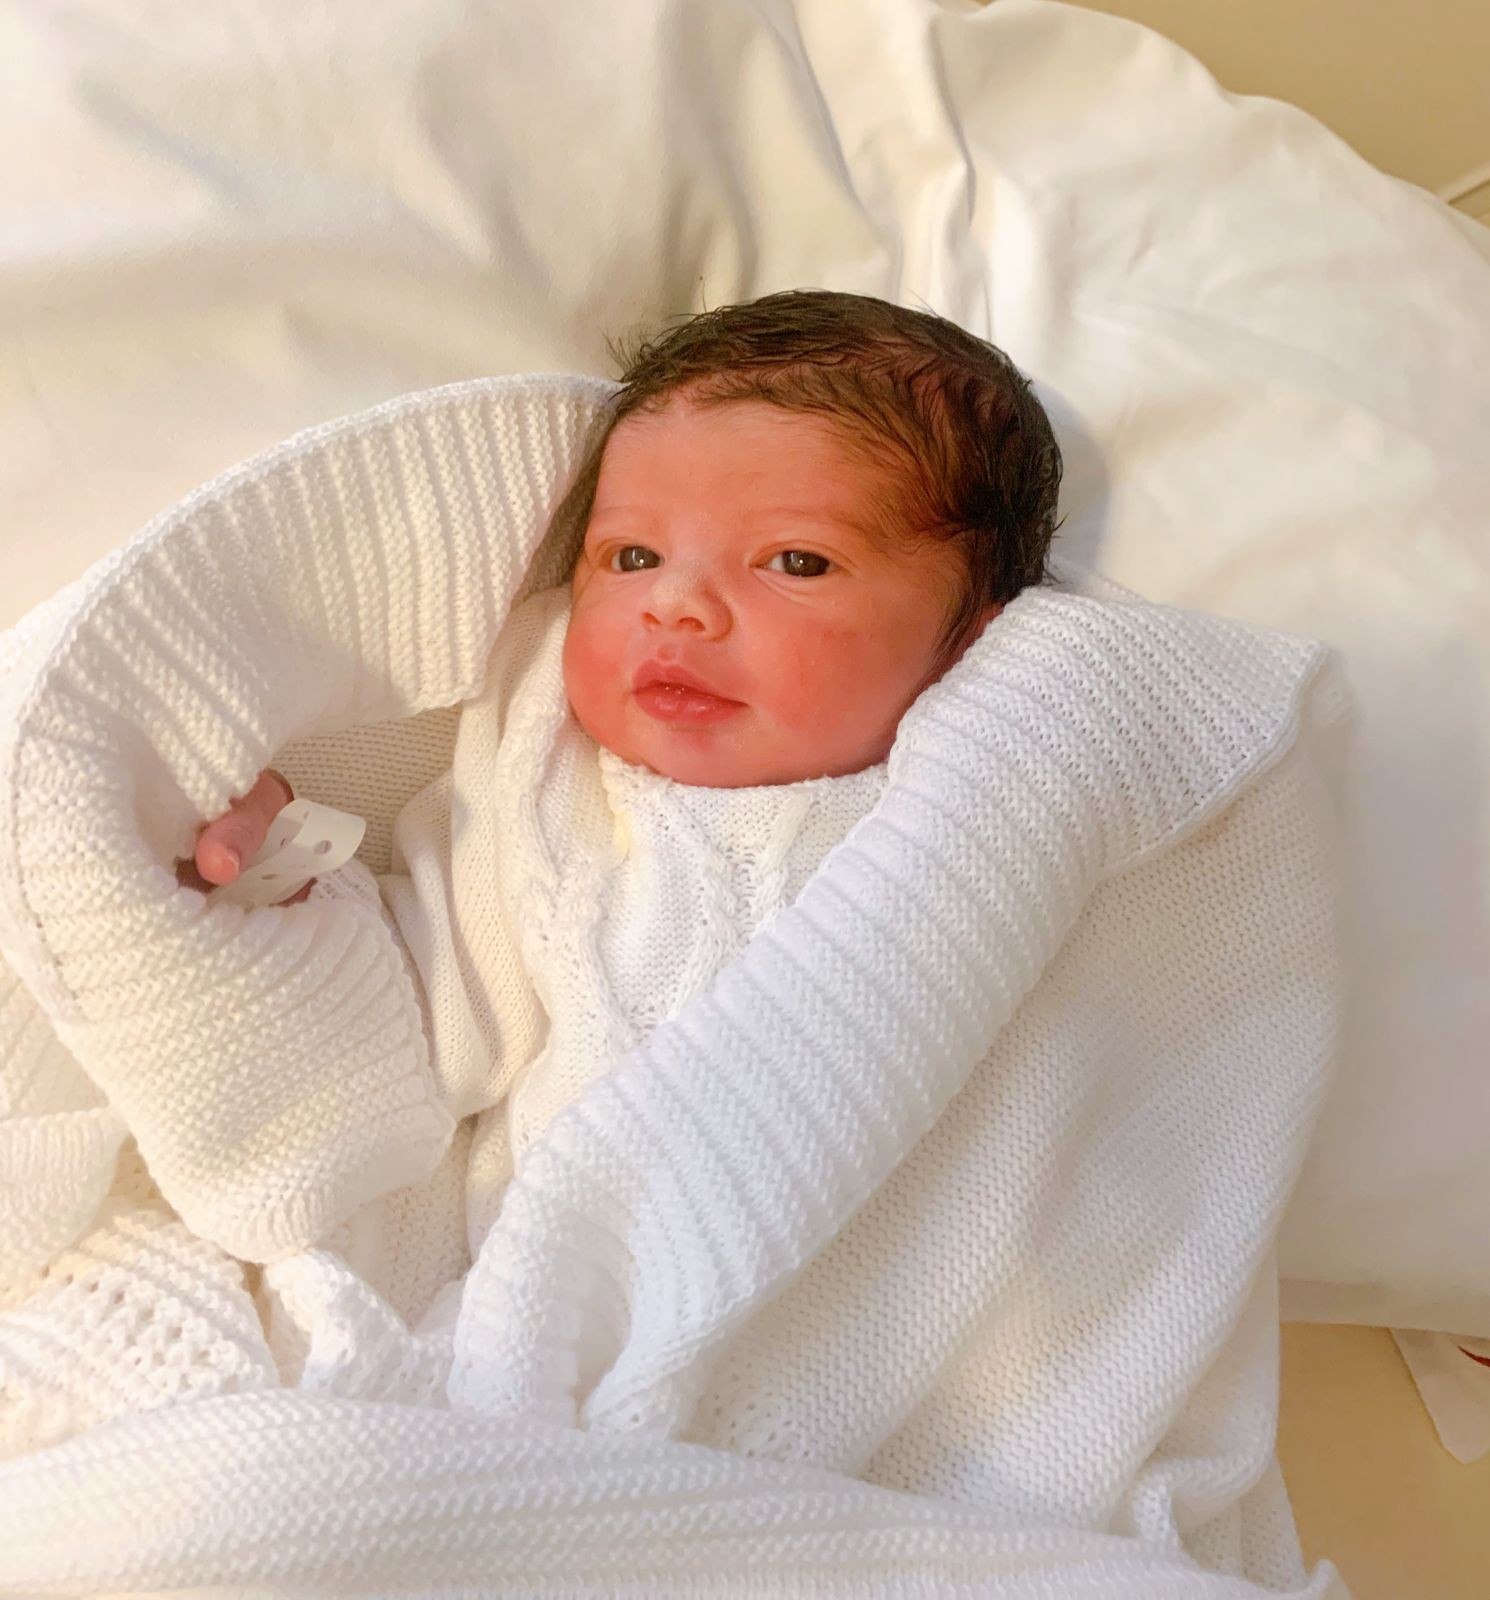 Debby Lagranha dá à luz Arthur, seu segundo filho  (Foto: Arquivo pessoal)